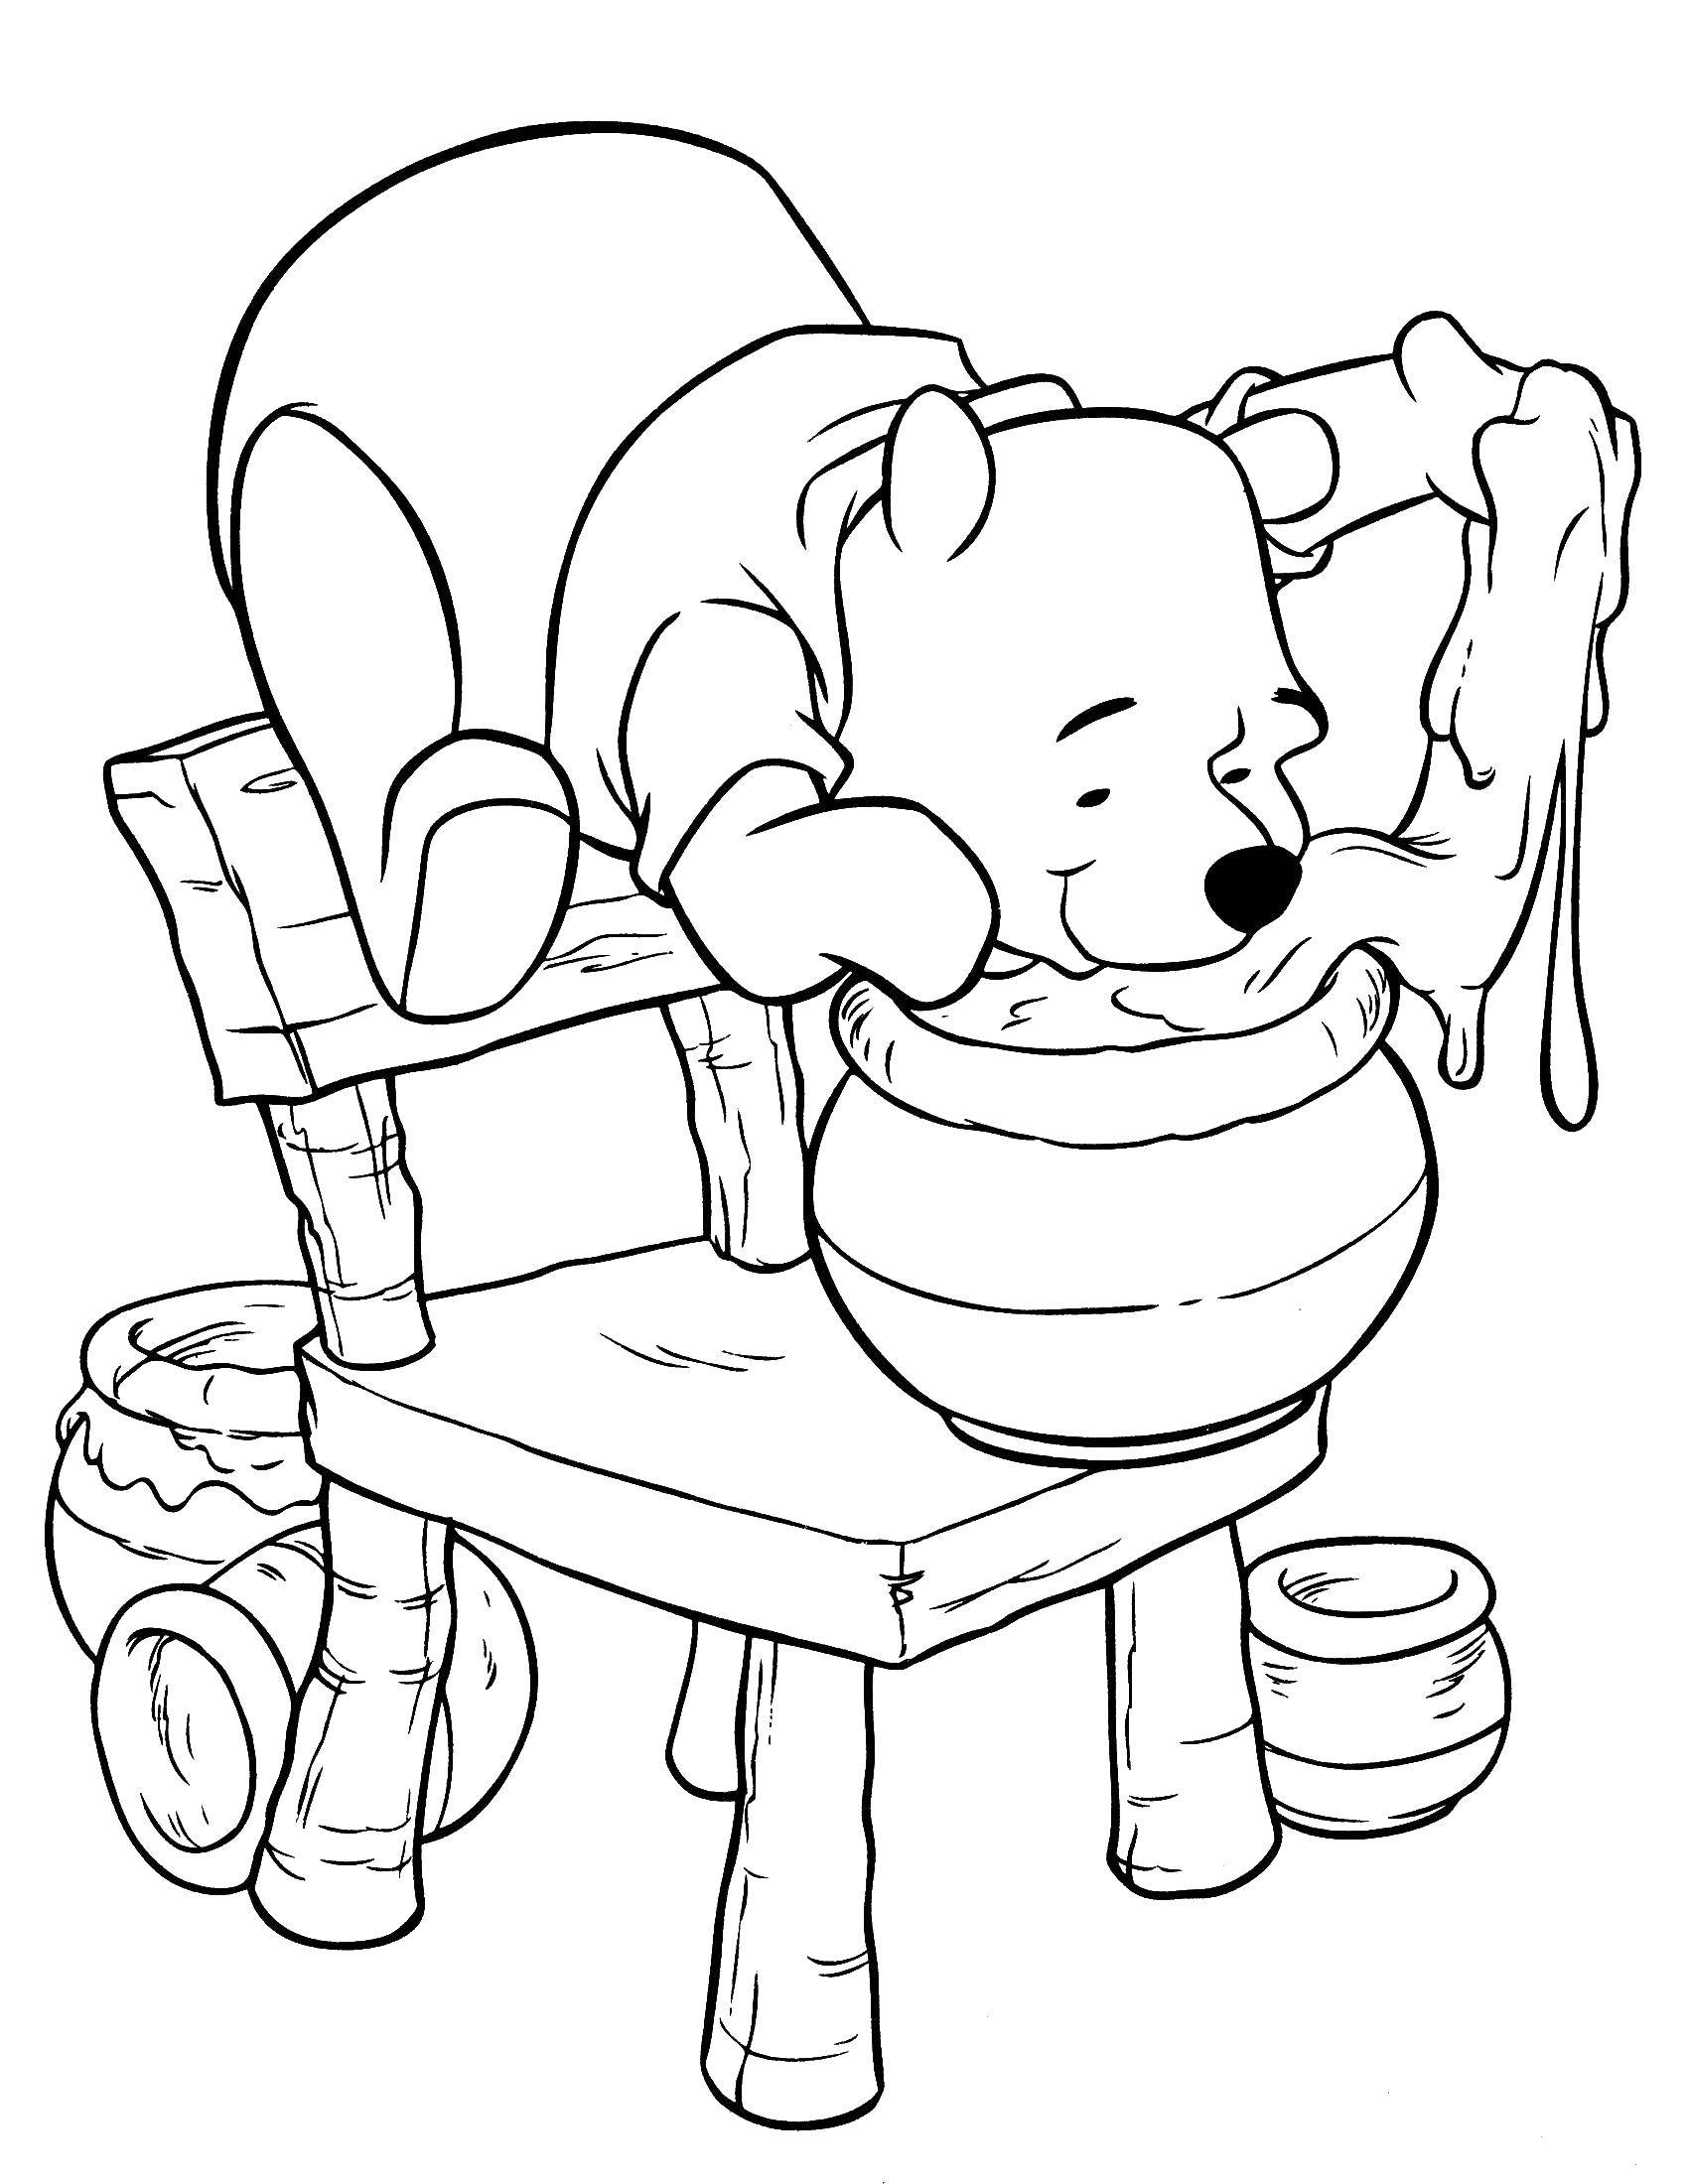 Раскраски из зарубежного мультфильма про Винни Пуха и его друзей для самых маленьких   Винни пух и мёд